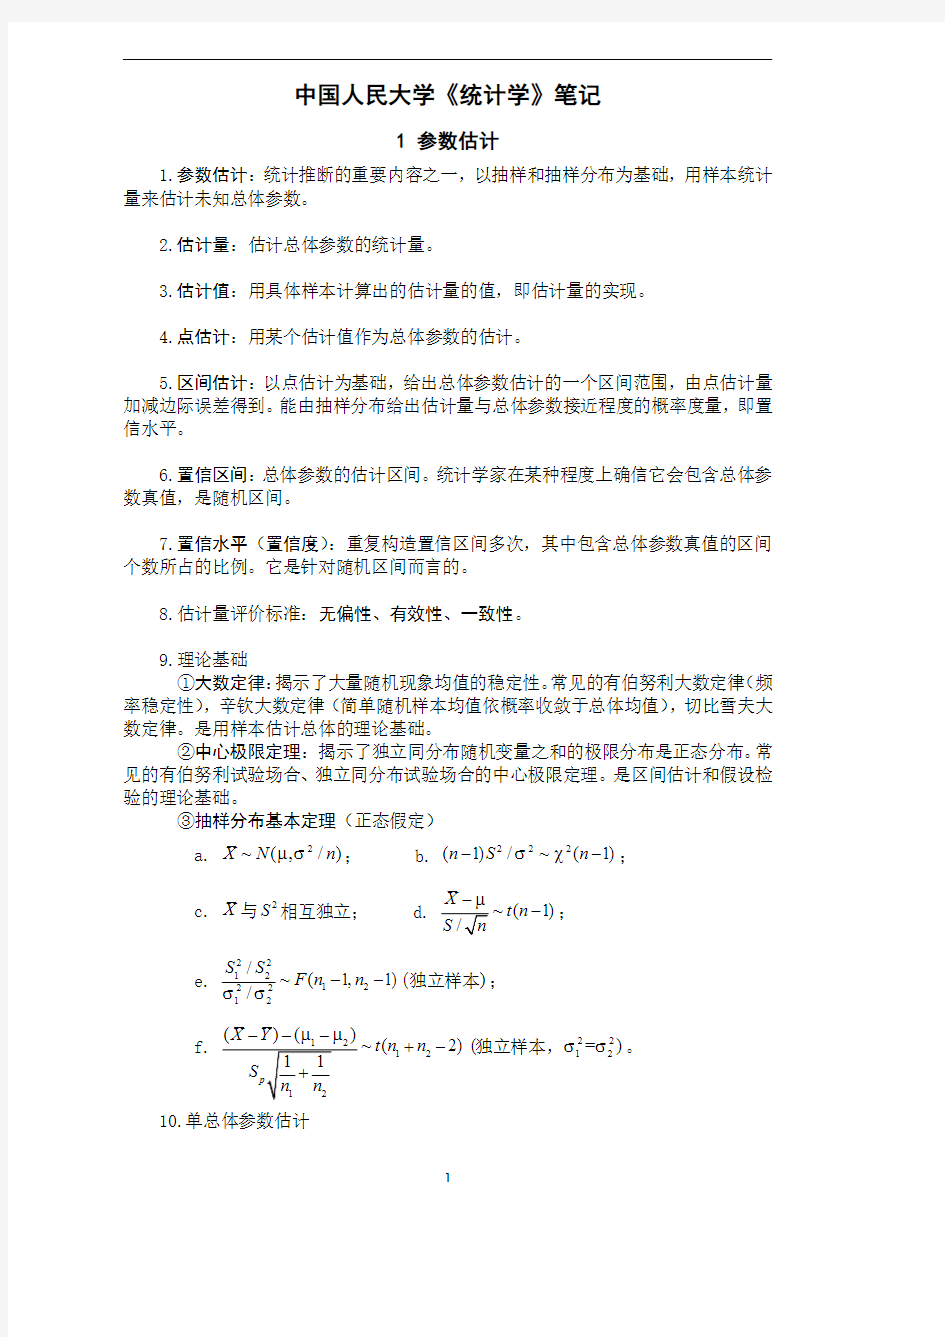 中国人民大学《统计学》考研笔记